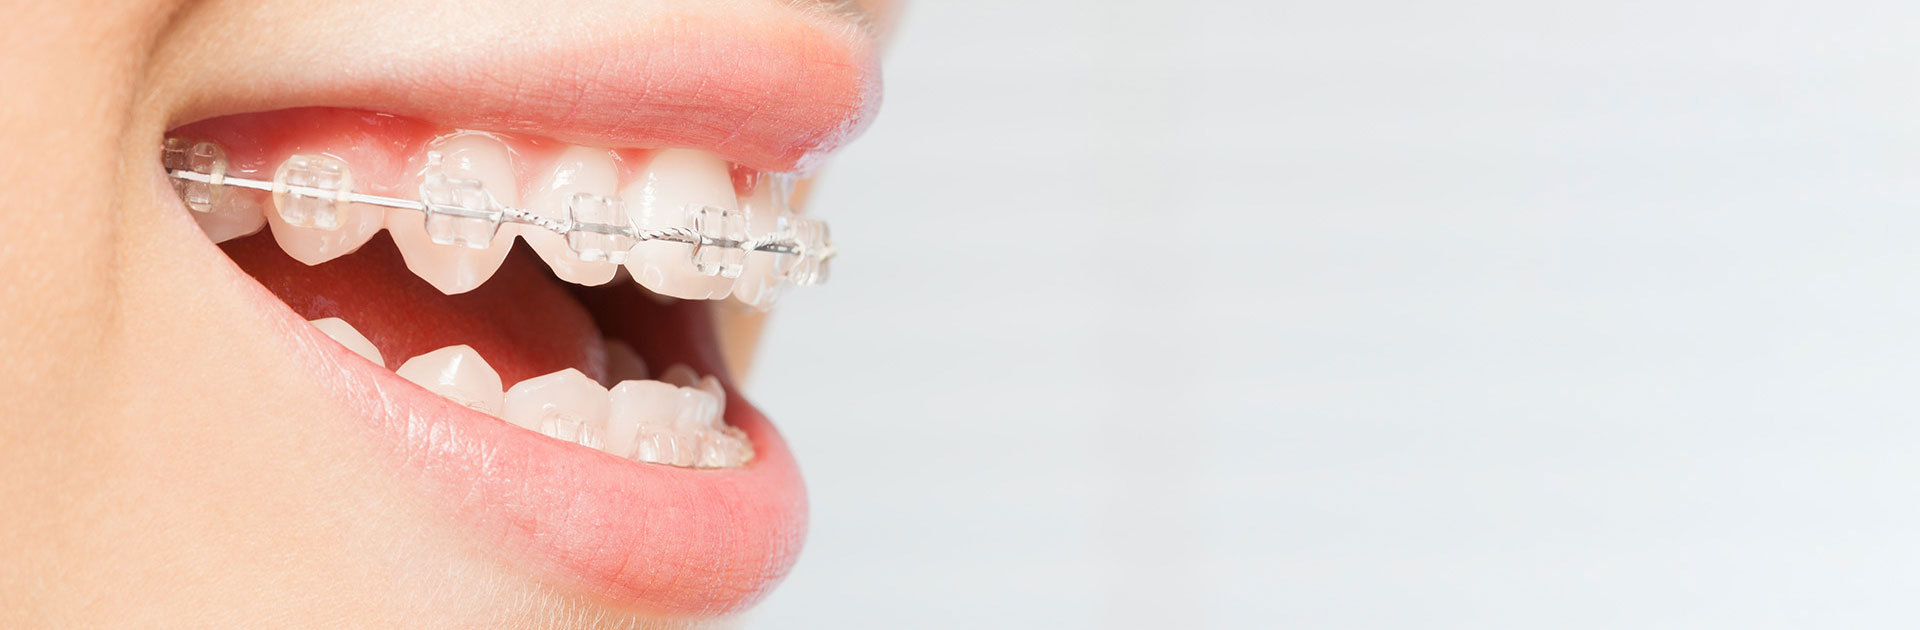 Orthodontic braces